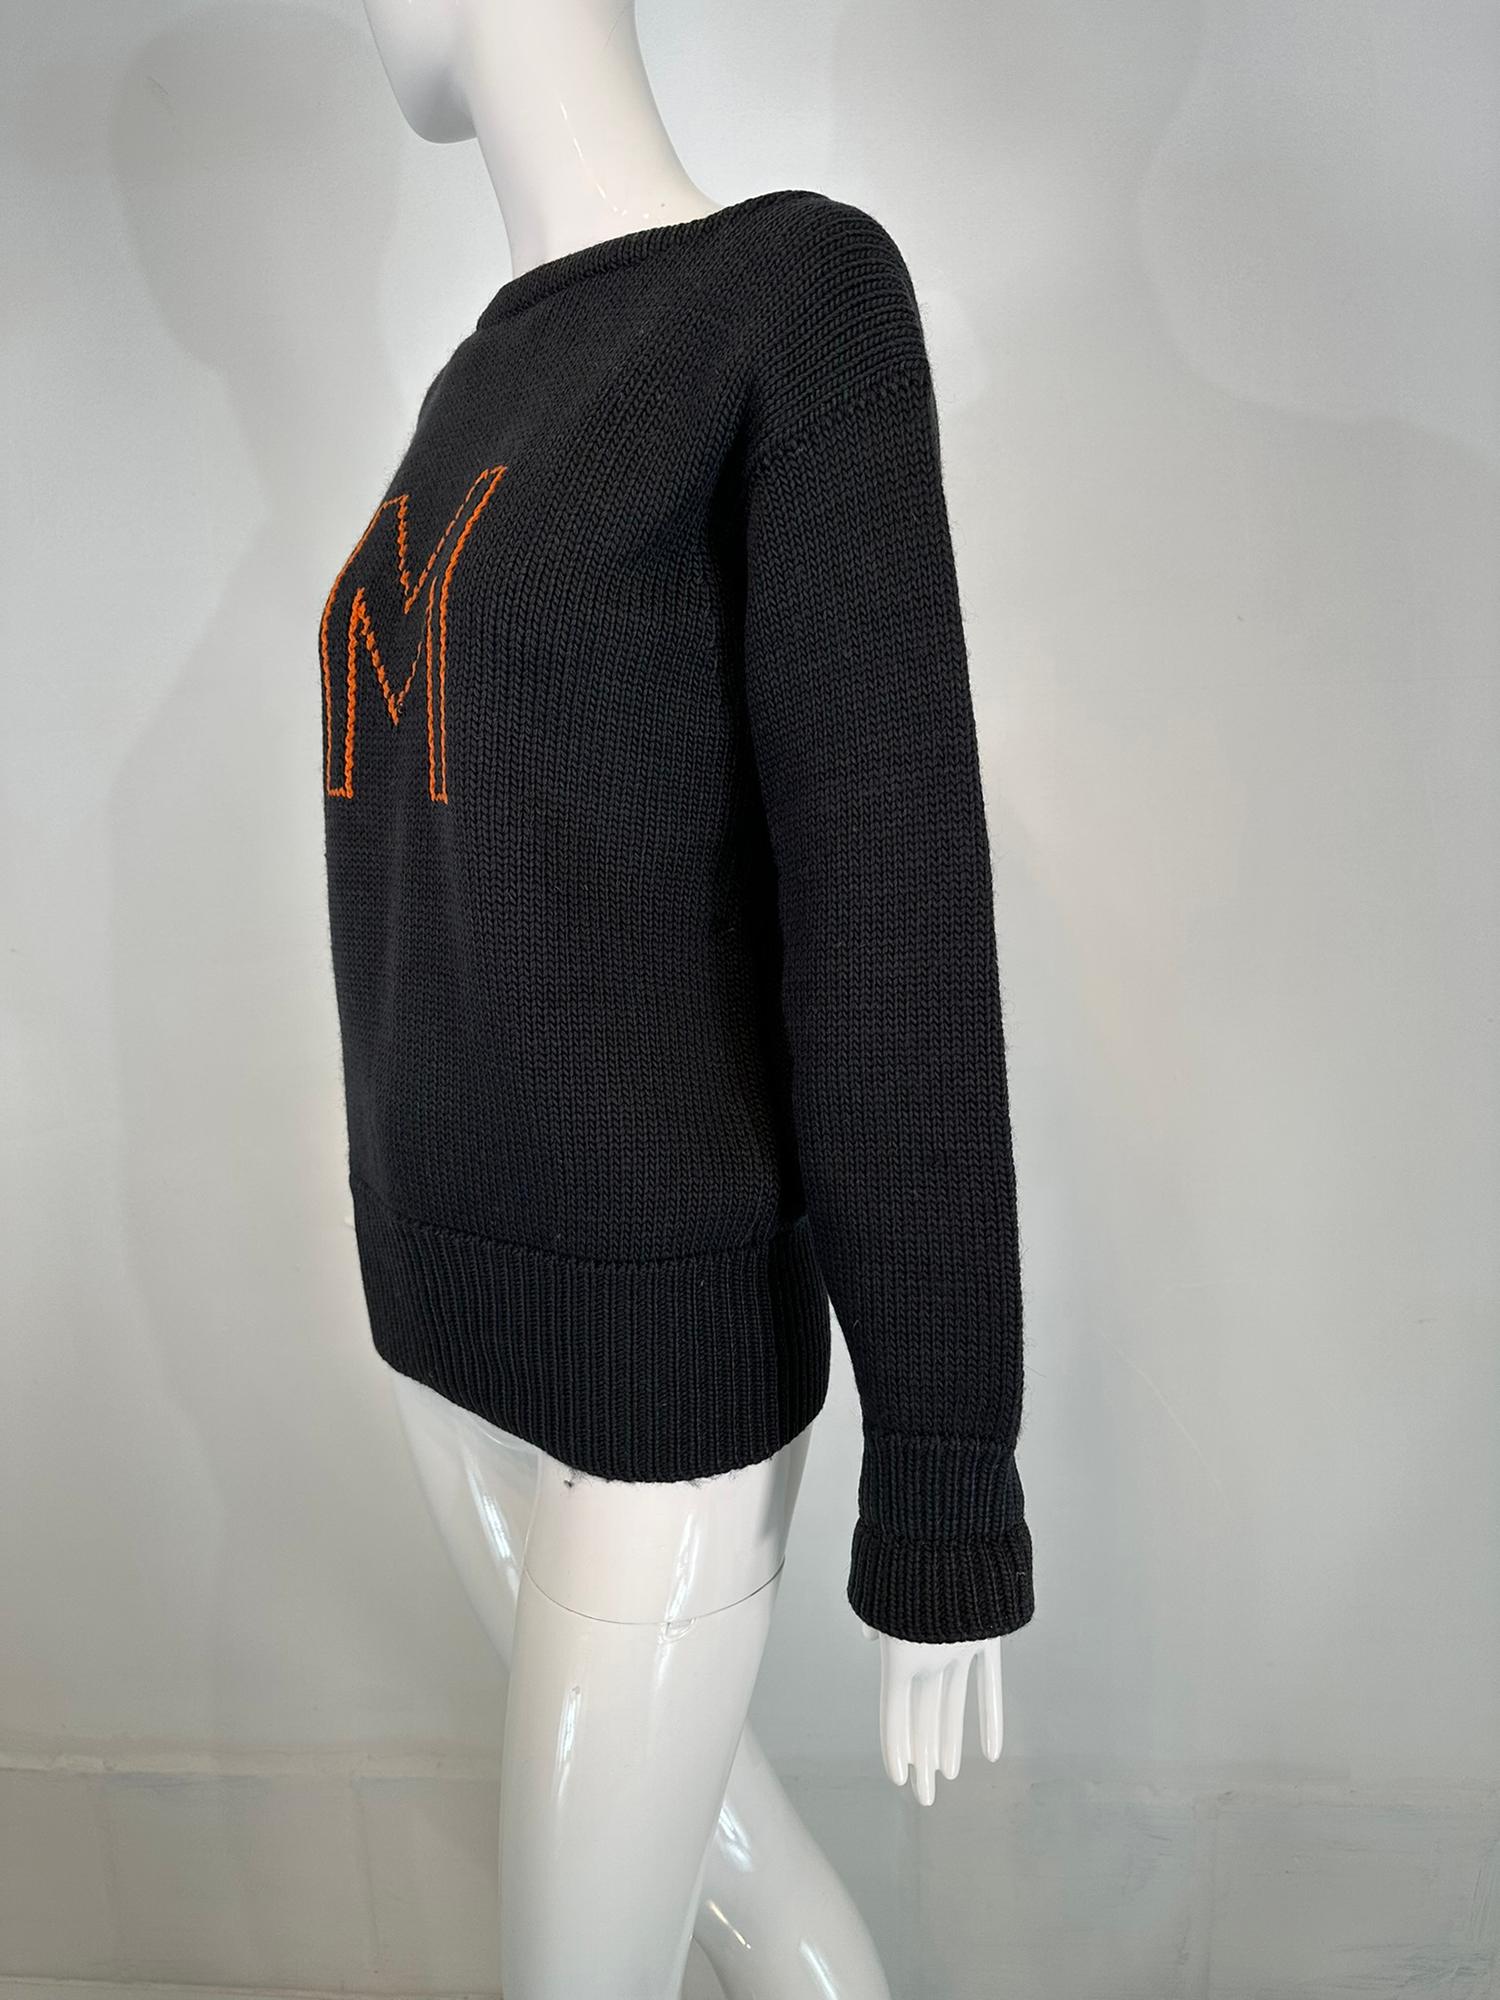 Women's or Men's Milton Academy Mass. Early 1900s Varsity Knit School Sweater Blue & Orange For Sale